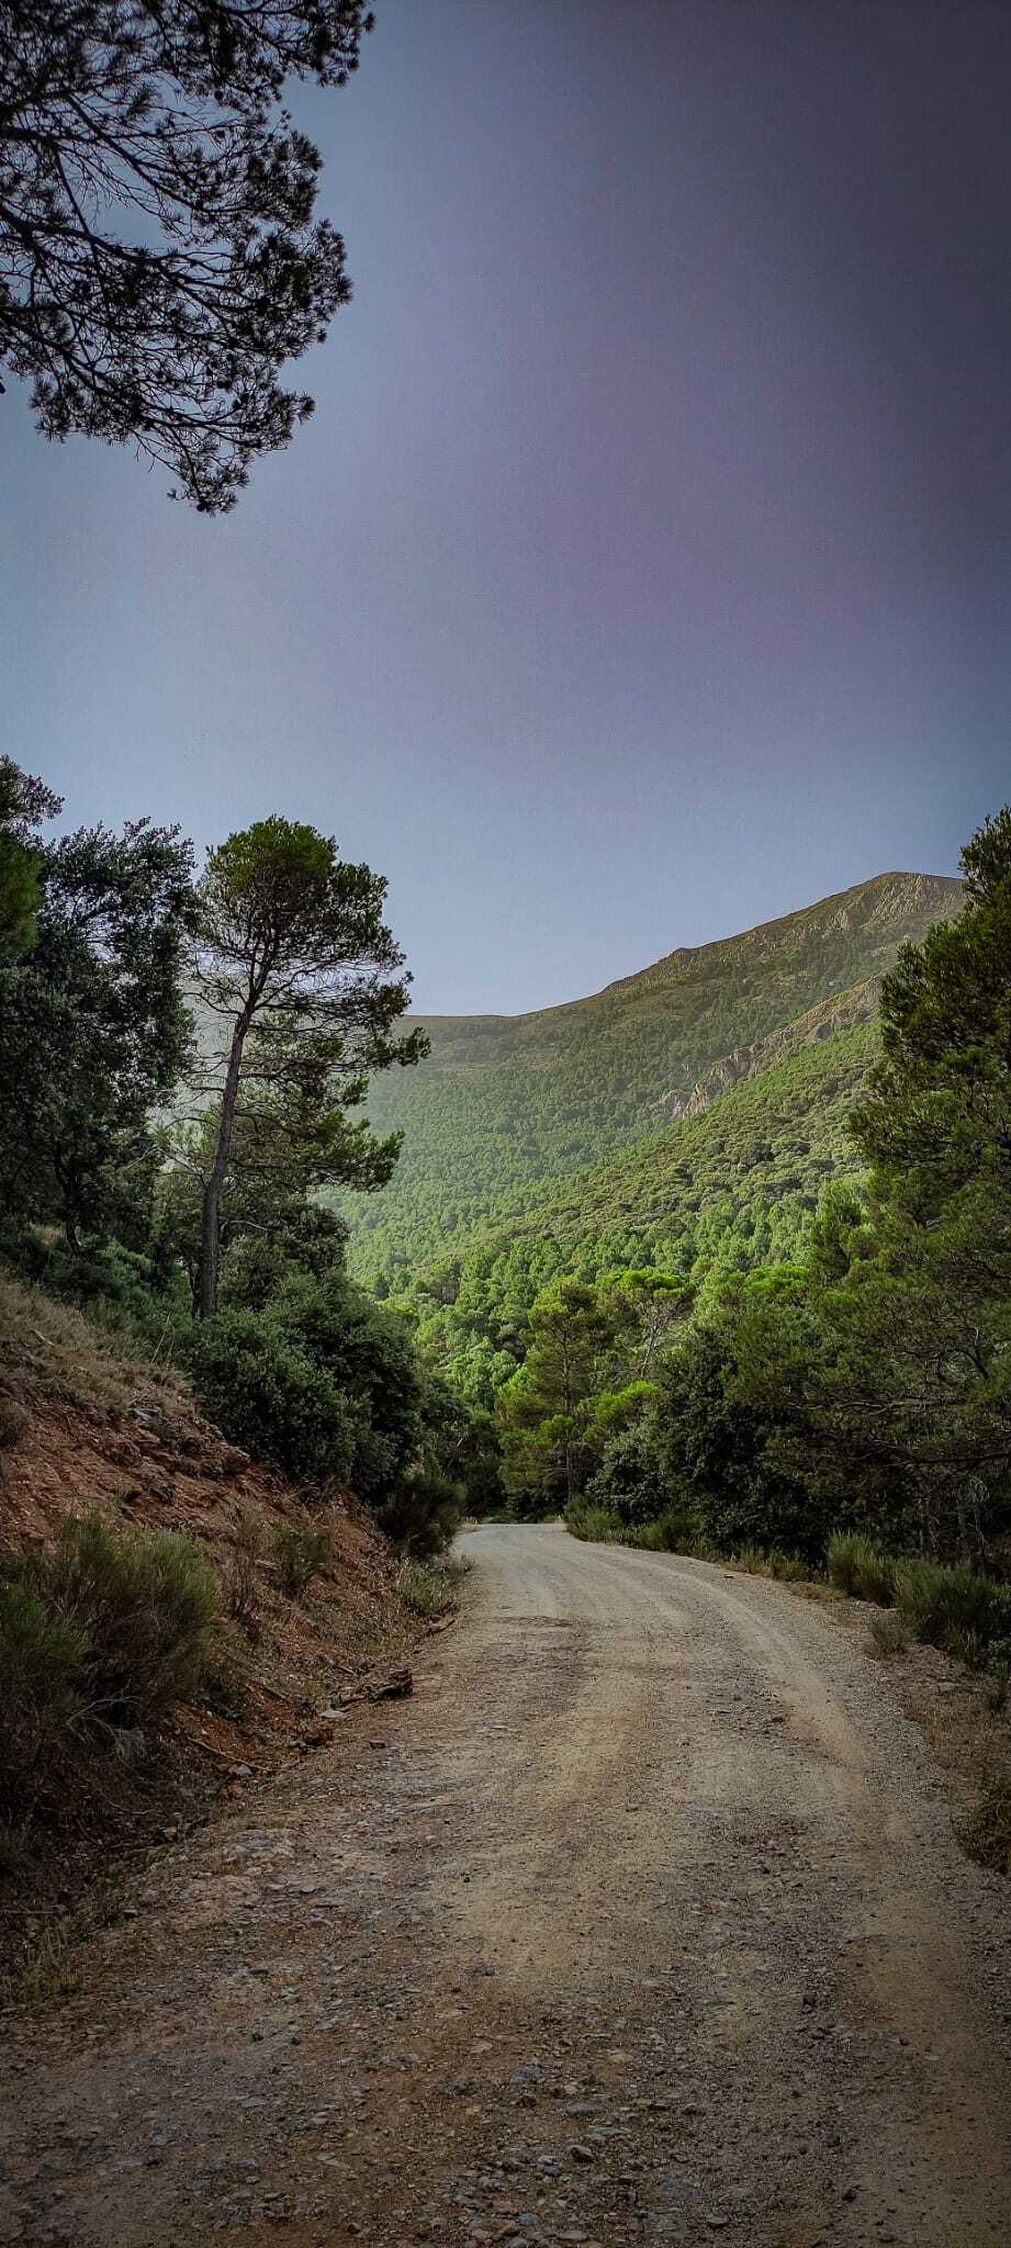 Arboledas de encinas y pinos carrascos, t&iacute;picos de  Andaluc&iacute;a, pueblan el camino.